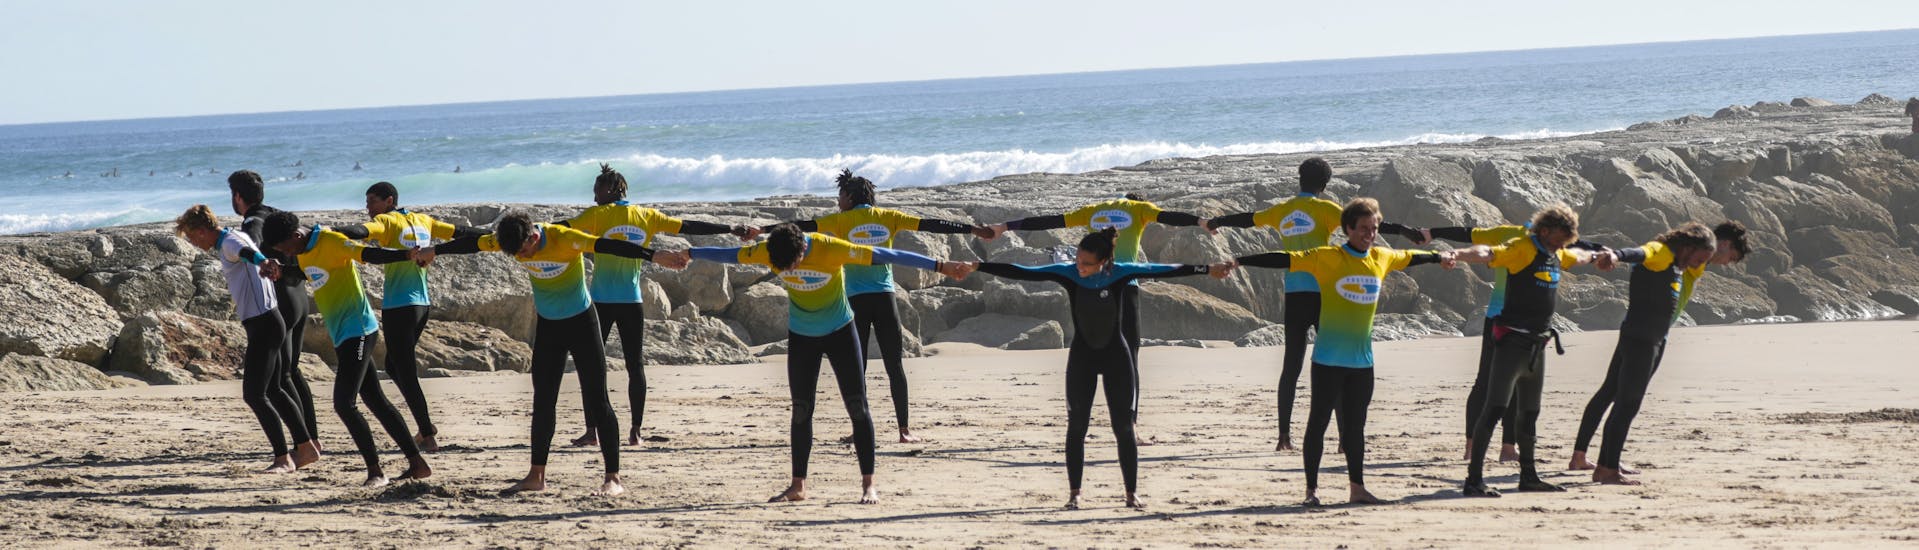 Warm-up oefening tijdens Surflessen (vanaf 6 j.) in Costa da Caparica.